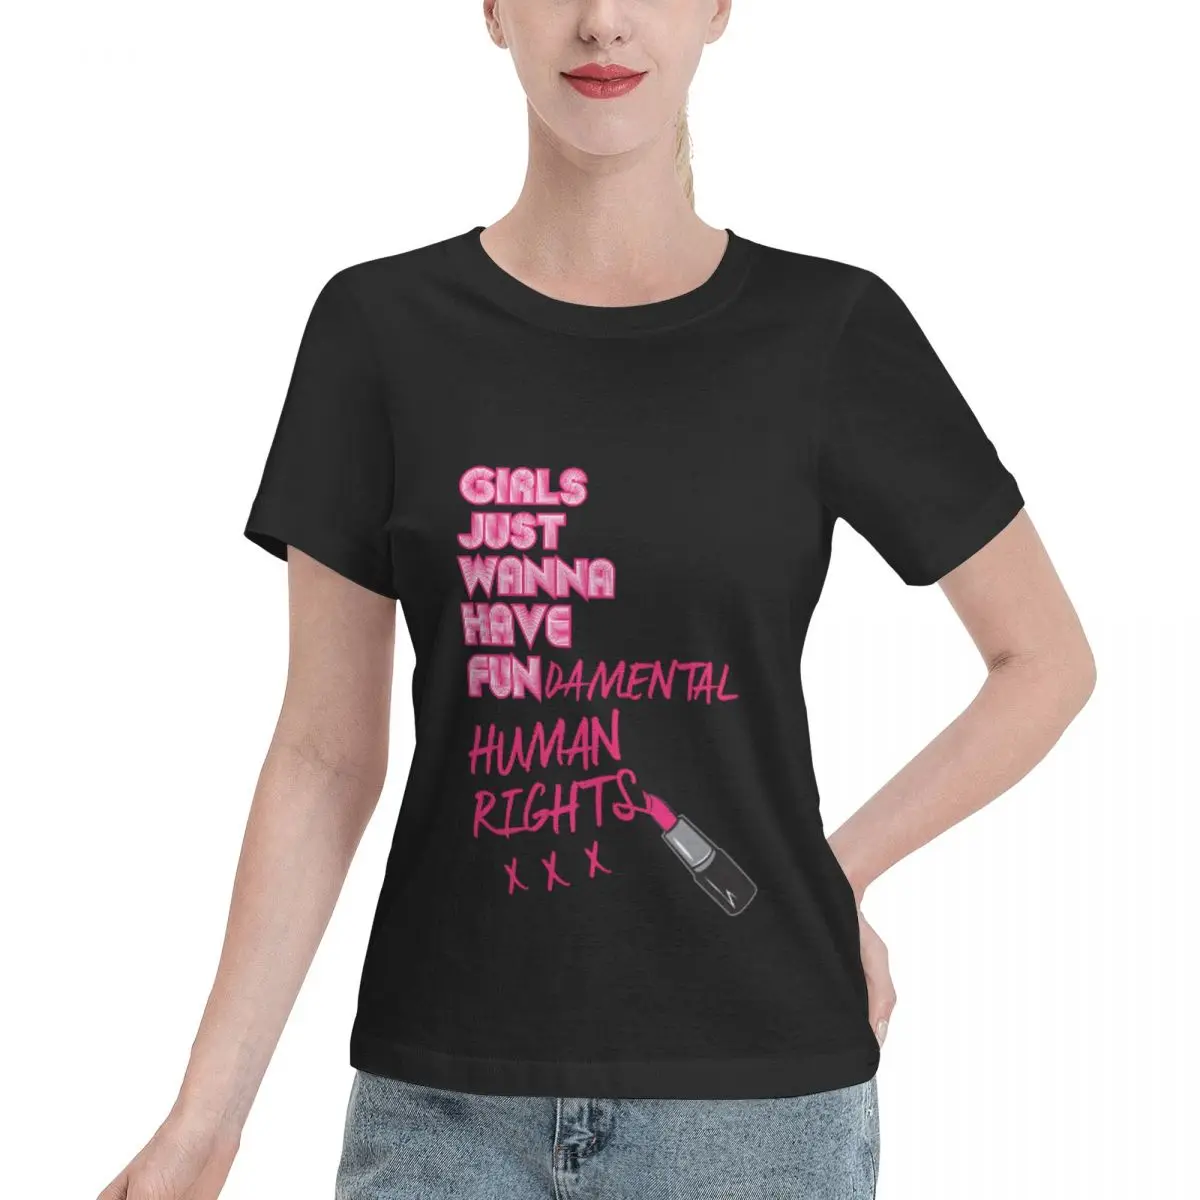 Базовая классическая футболка, одежда из аниме, топы больших размеров, футболки для женщин